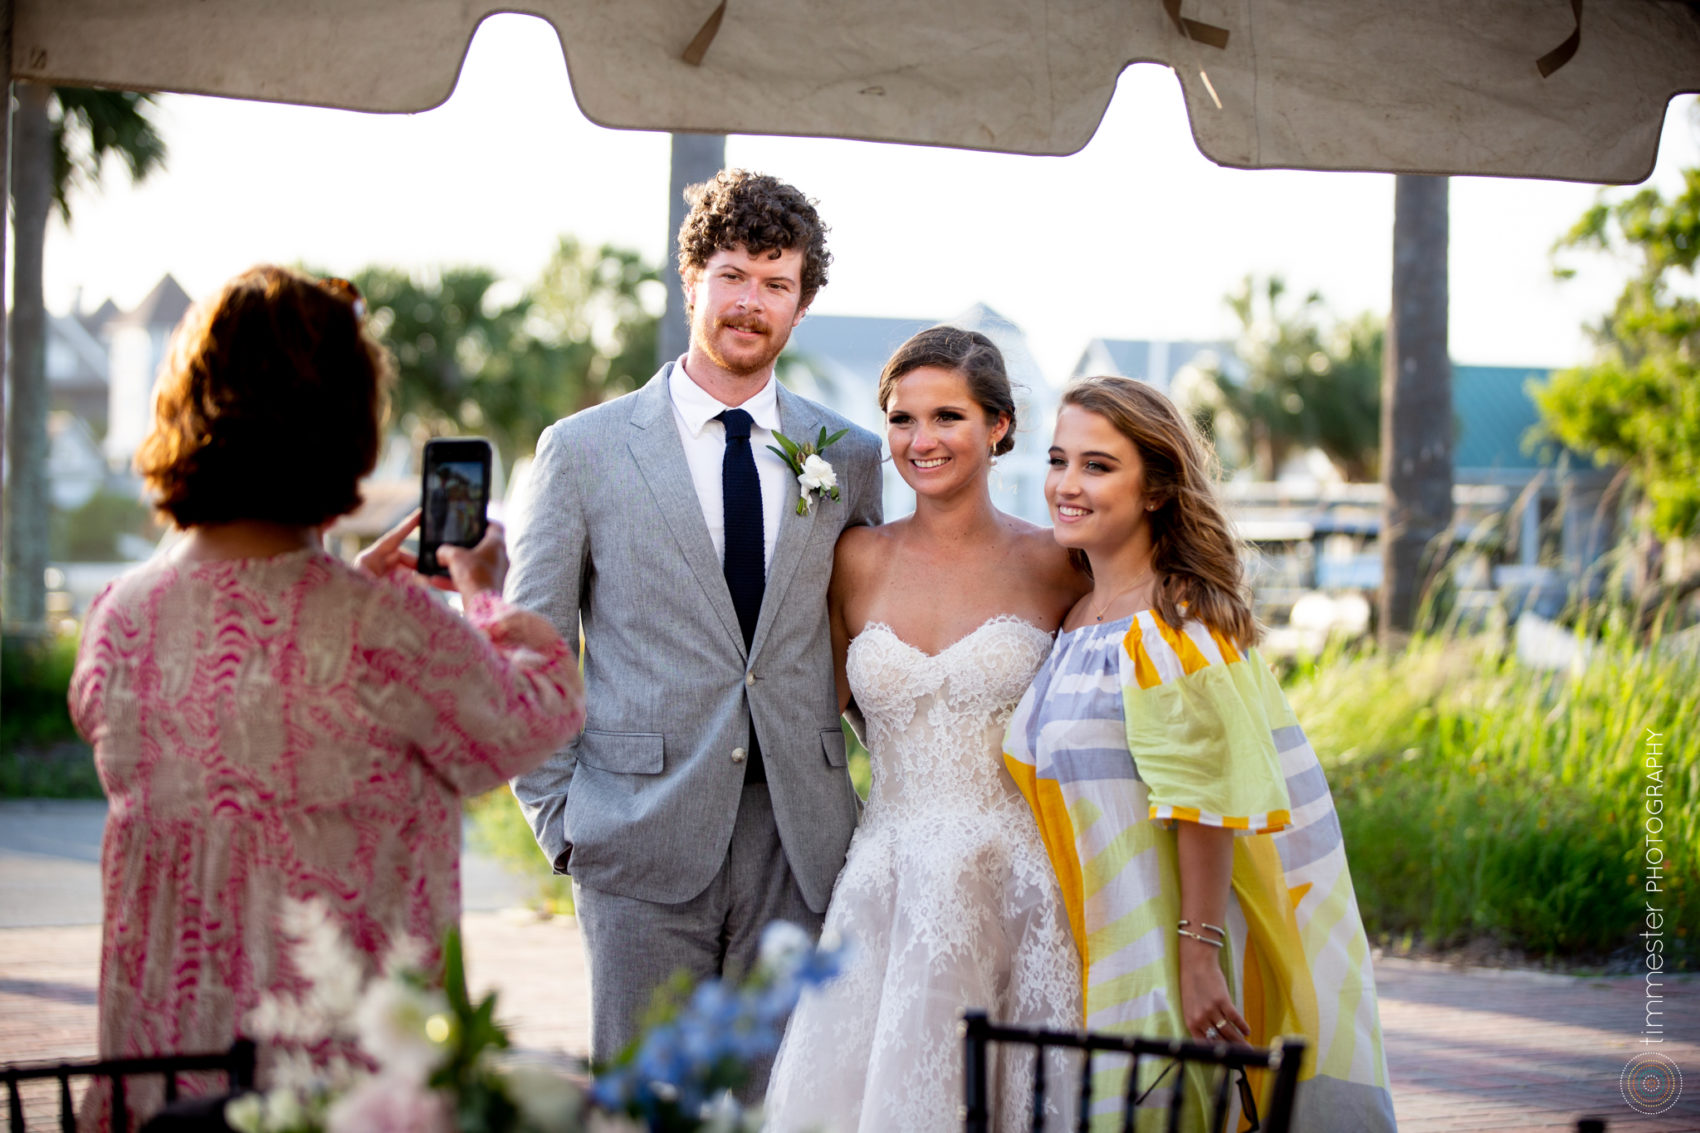 An outdoor wedding reception at Bald Head Island, North Carolina